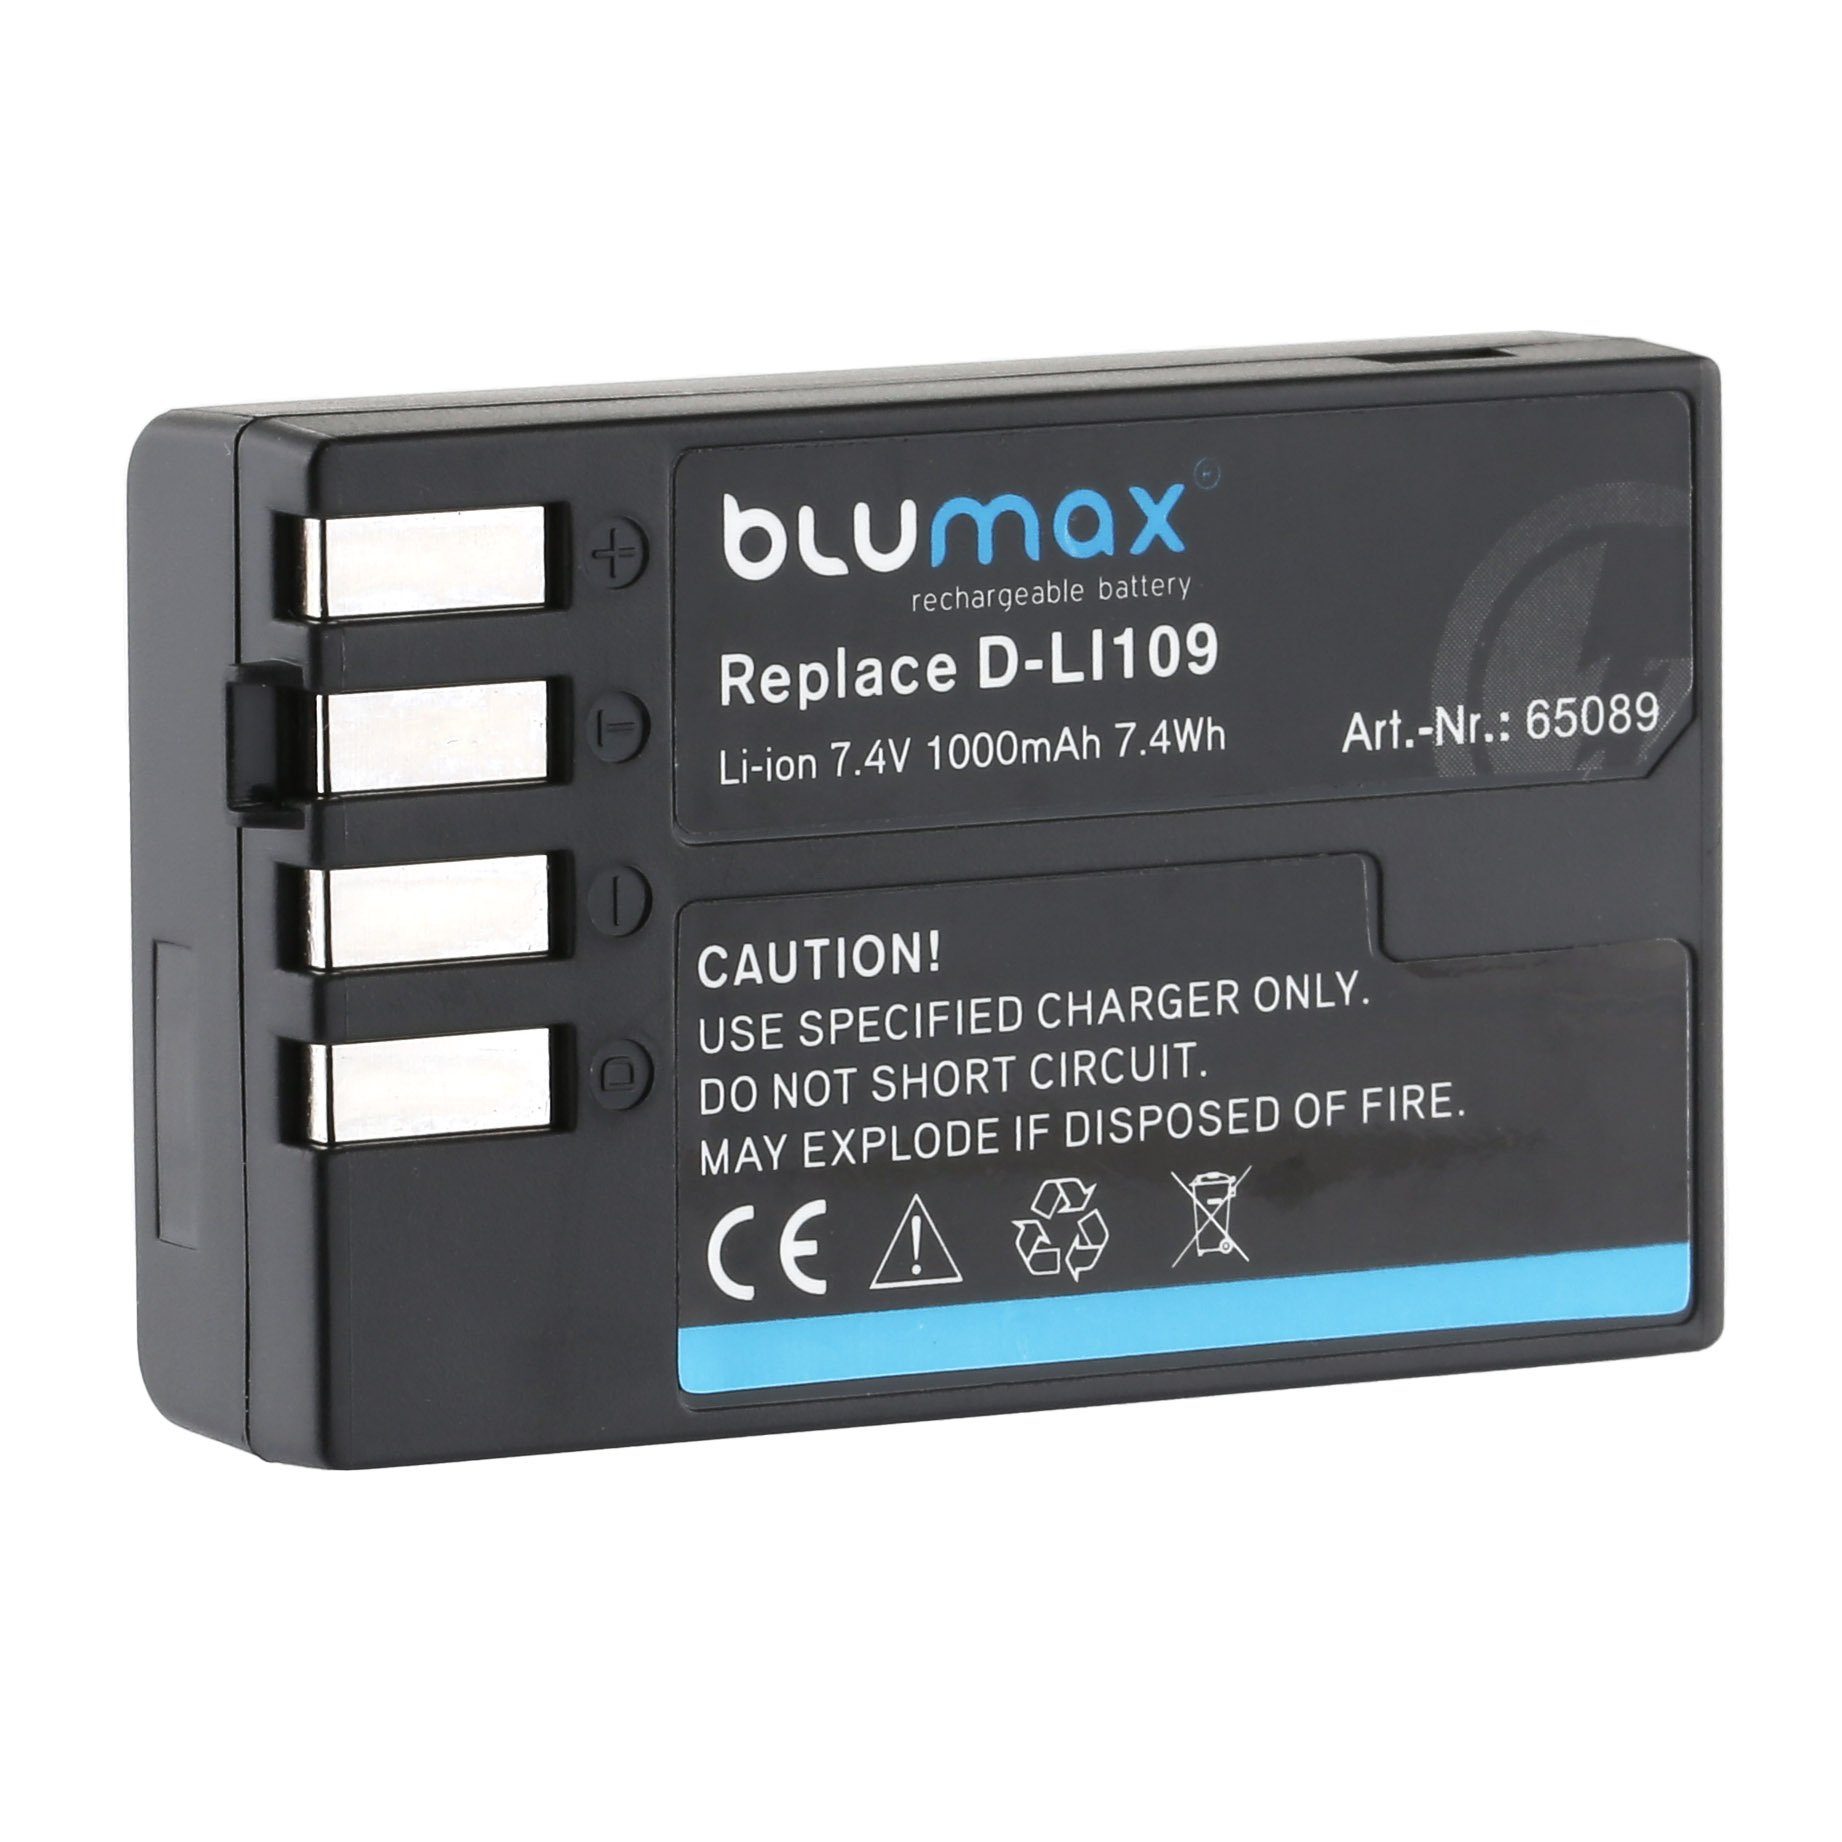 mAh Pentax D-Li109 Blumax (7,4V) Kamera-Akku für passend Akku 1000